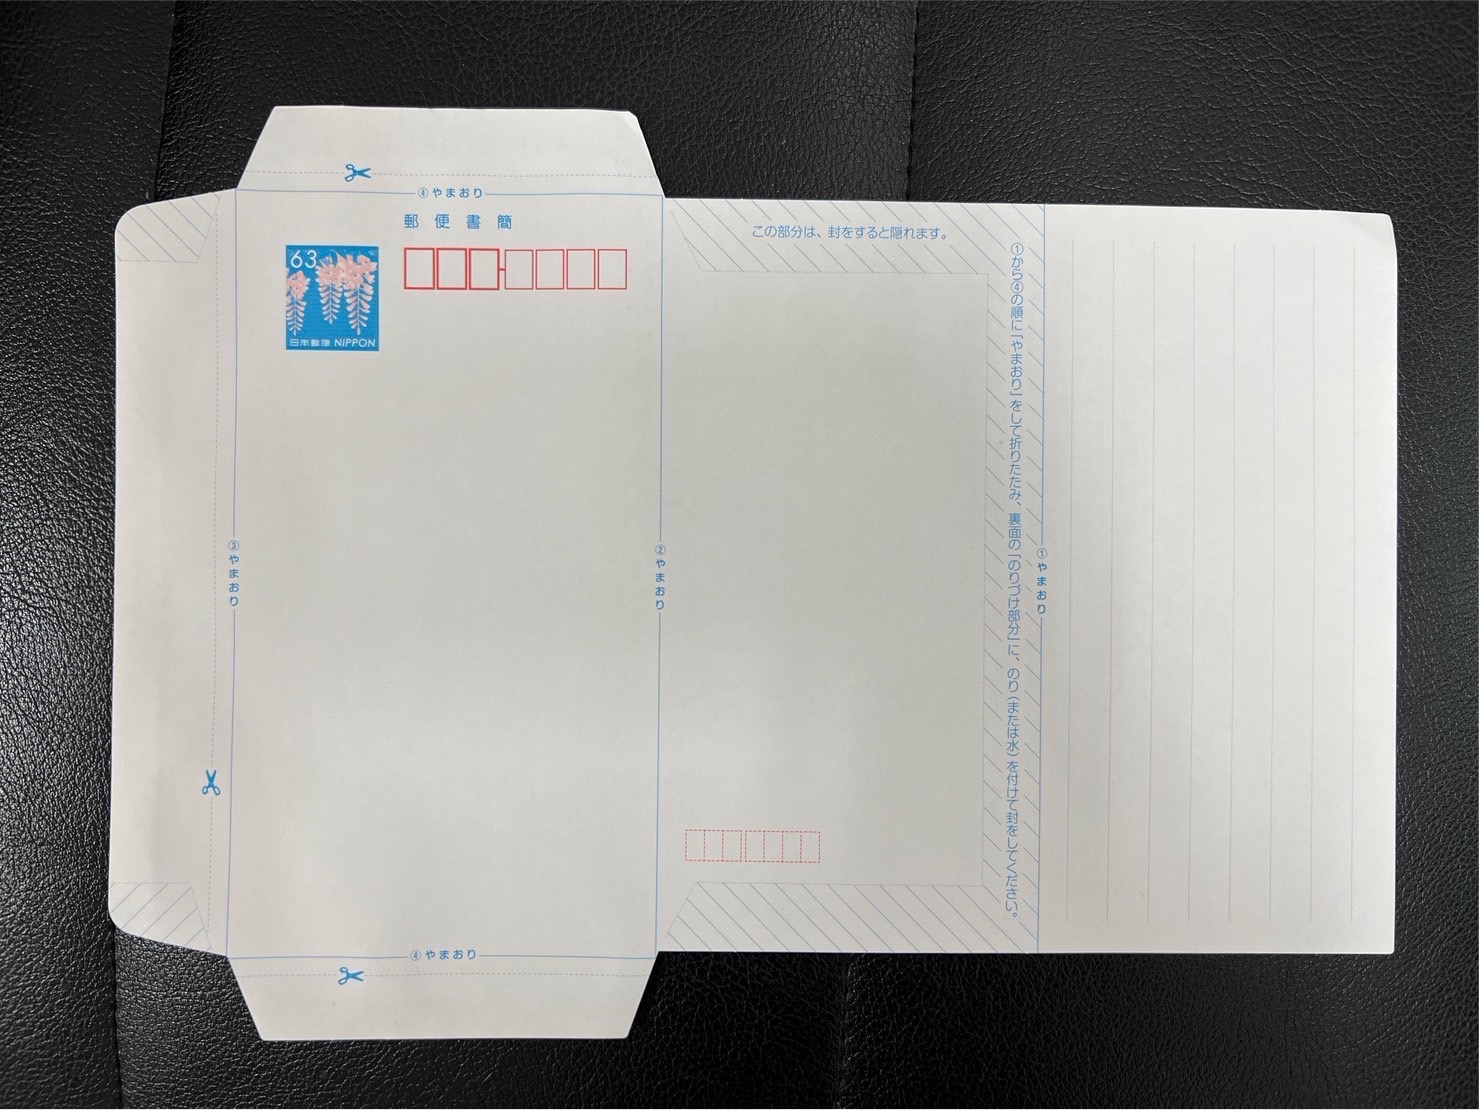 郵便書簡(ミニレター200枚バラ)×1セット。 - 使用済切手/官製はがき